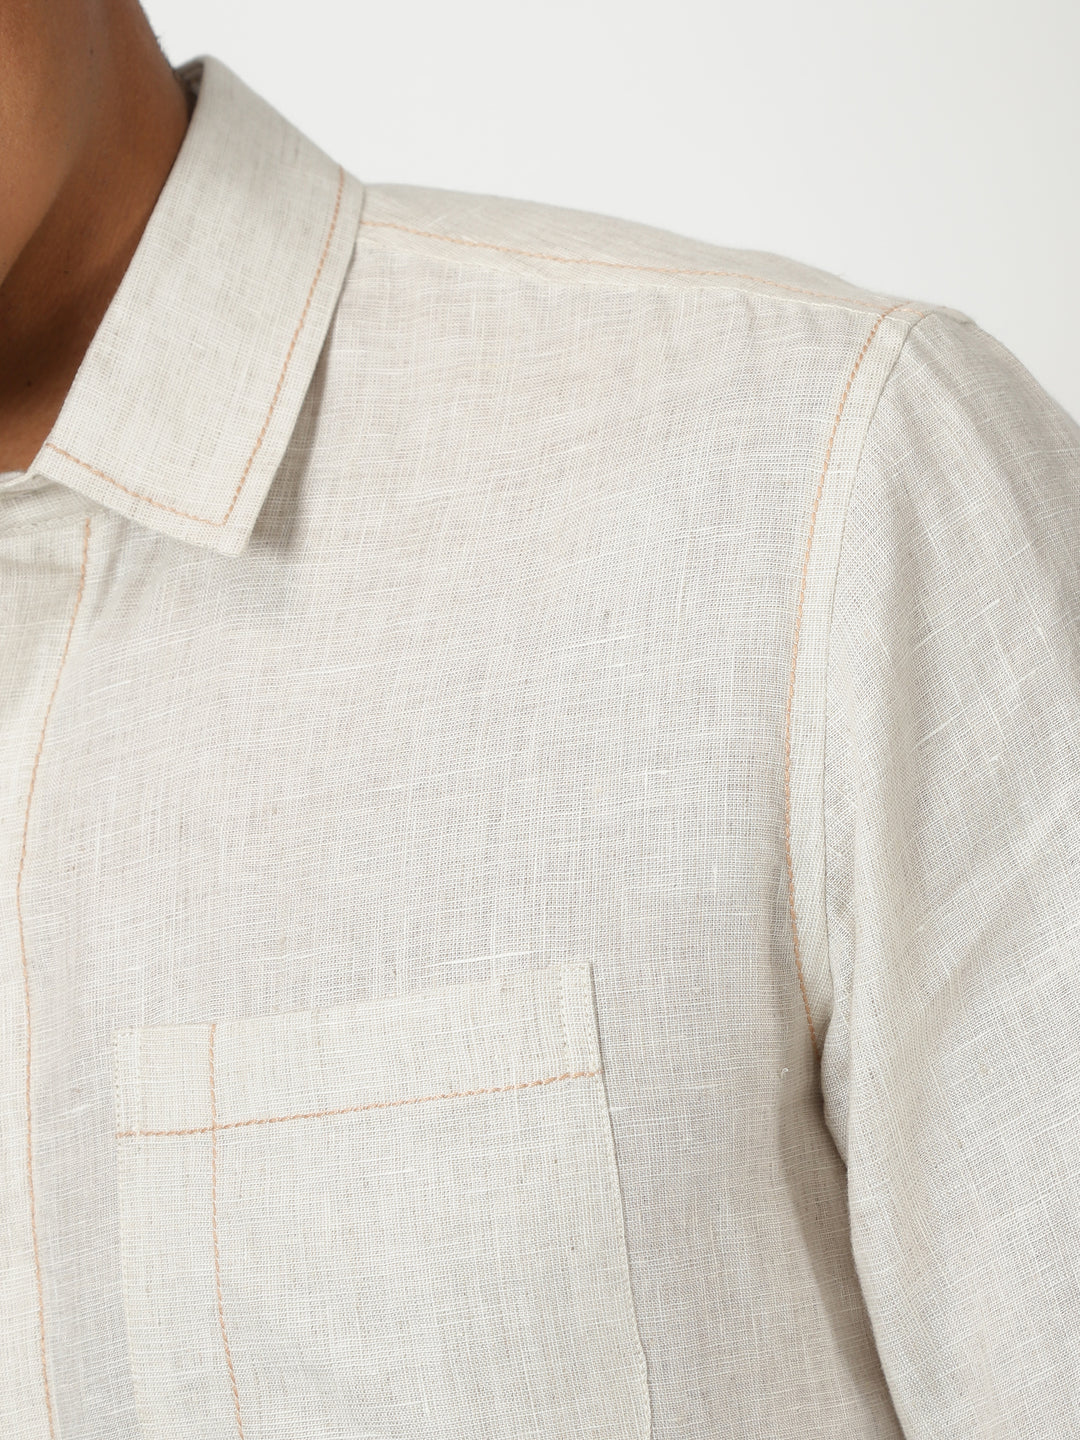 Paul - Pure Linen Stitch Detailed Full Sleeve Shirt - Light Ecru